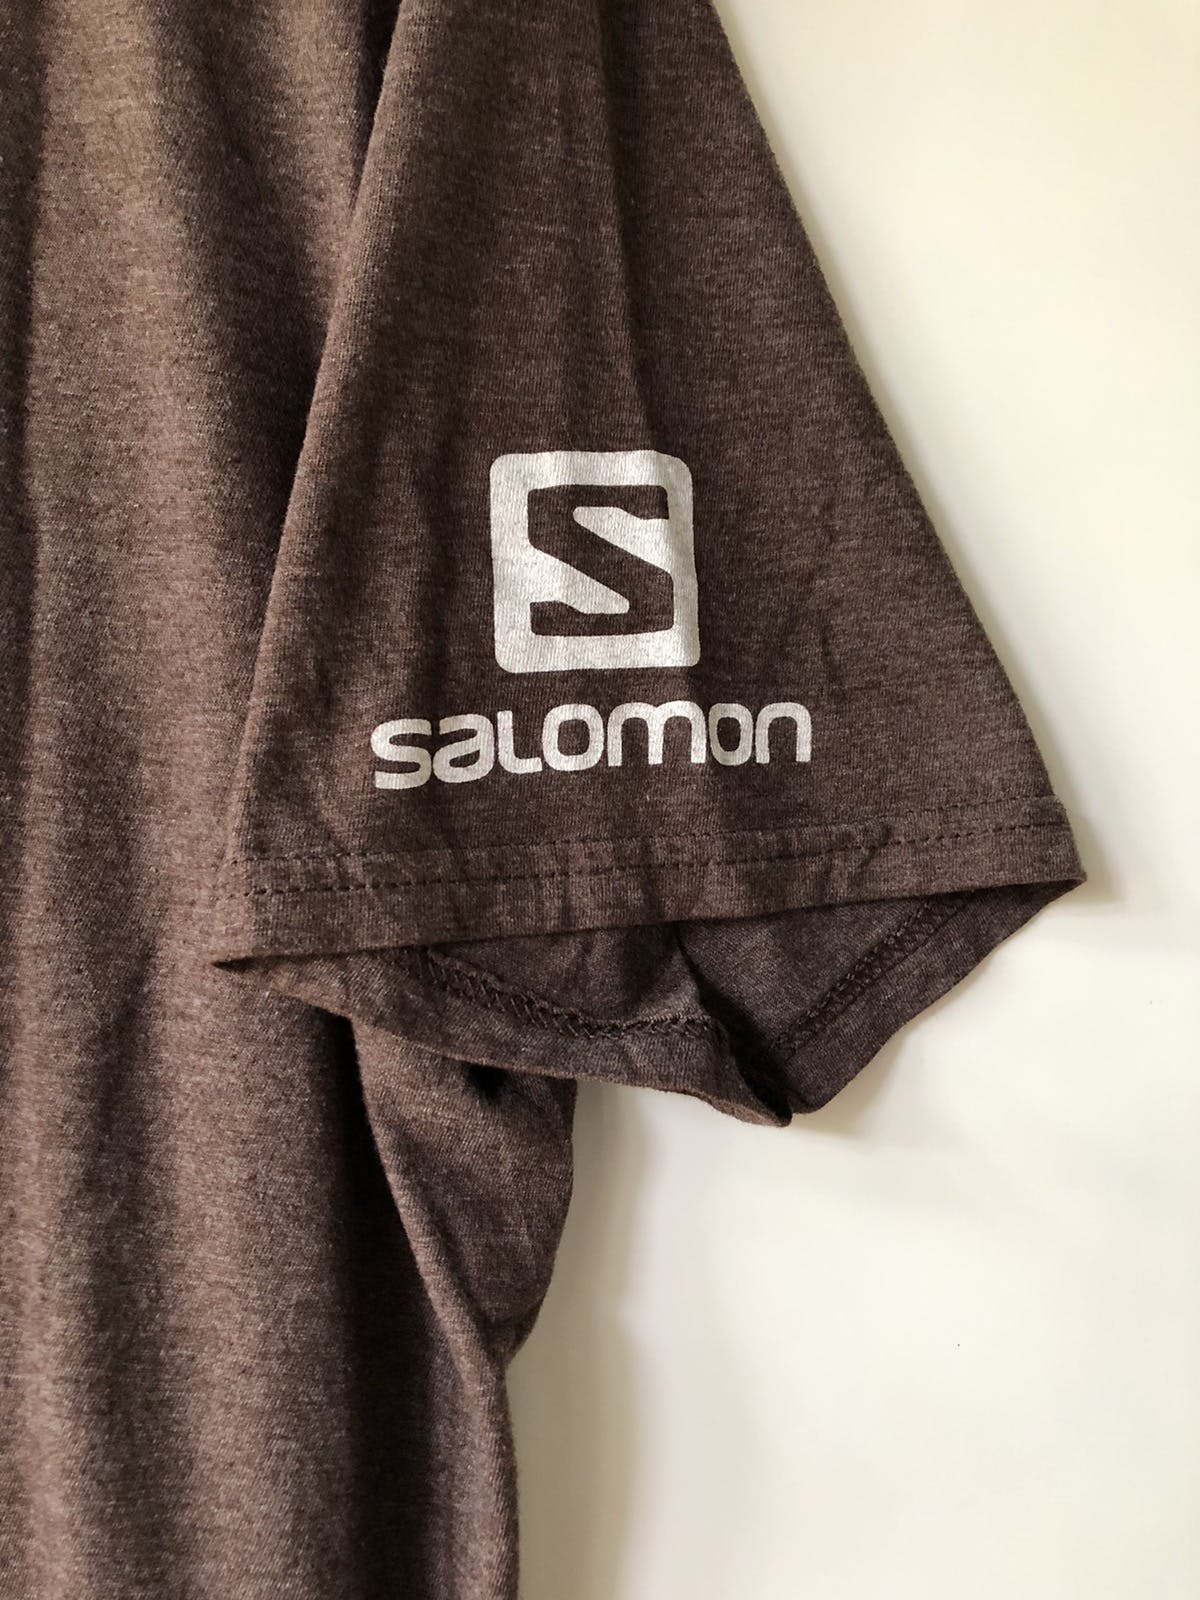 Salomon run dark brow shirt nice design - 3